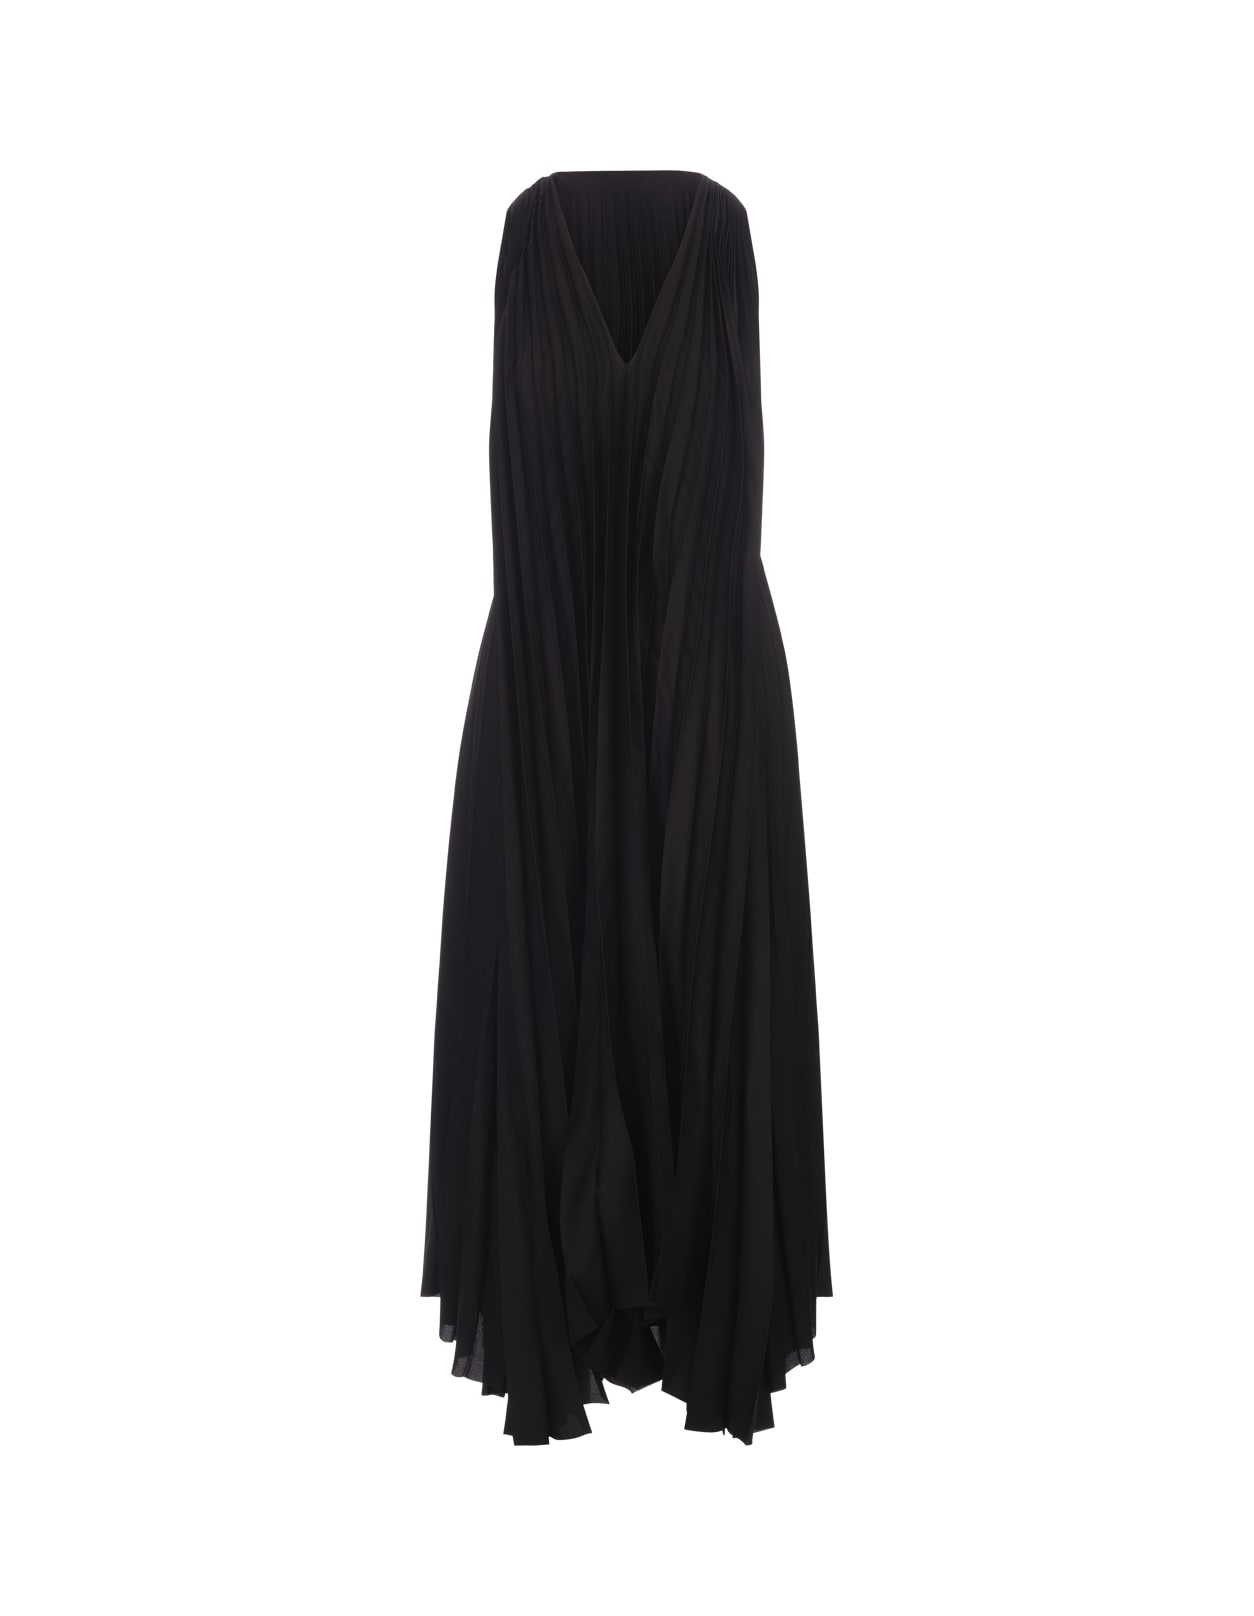 Fabiana Filippi Black Sleeveless Pleated Midi Dress